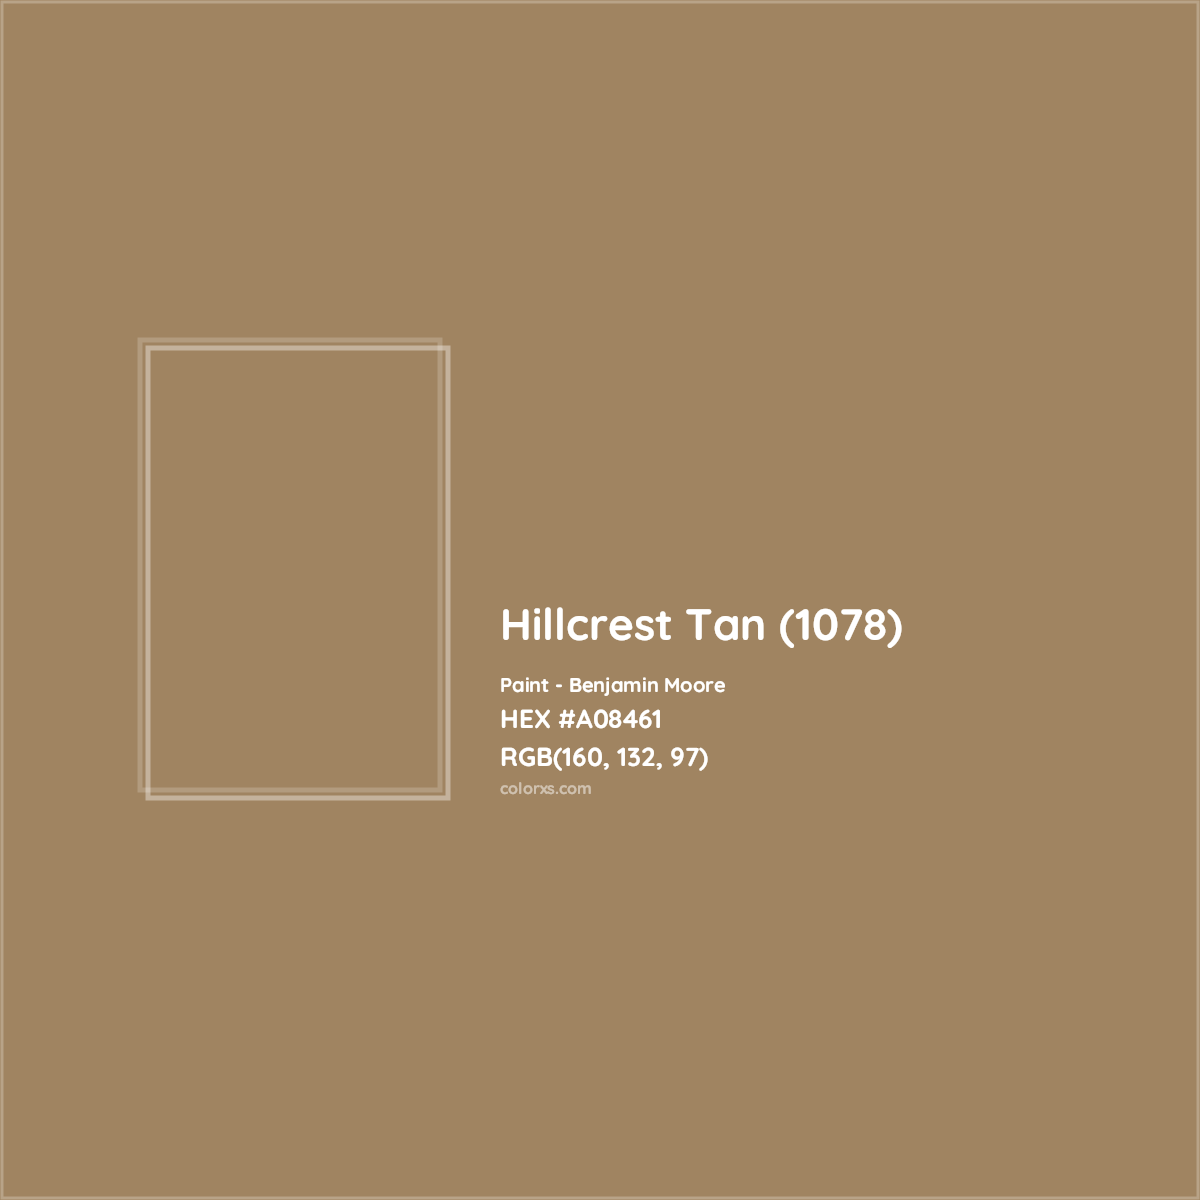 HEX #A08461 Hillcrest Tan (1078) Paint Benjamin Moore - Color Code